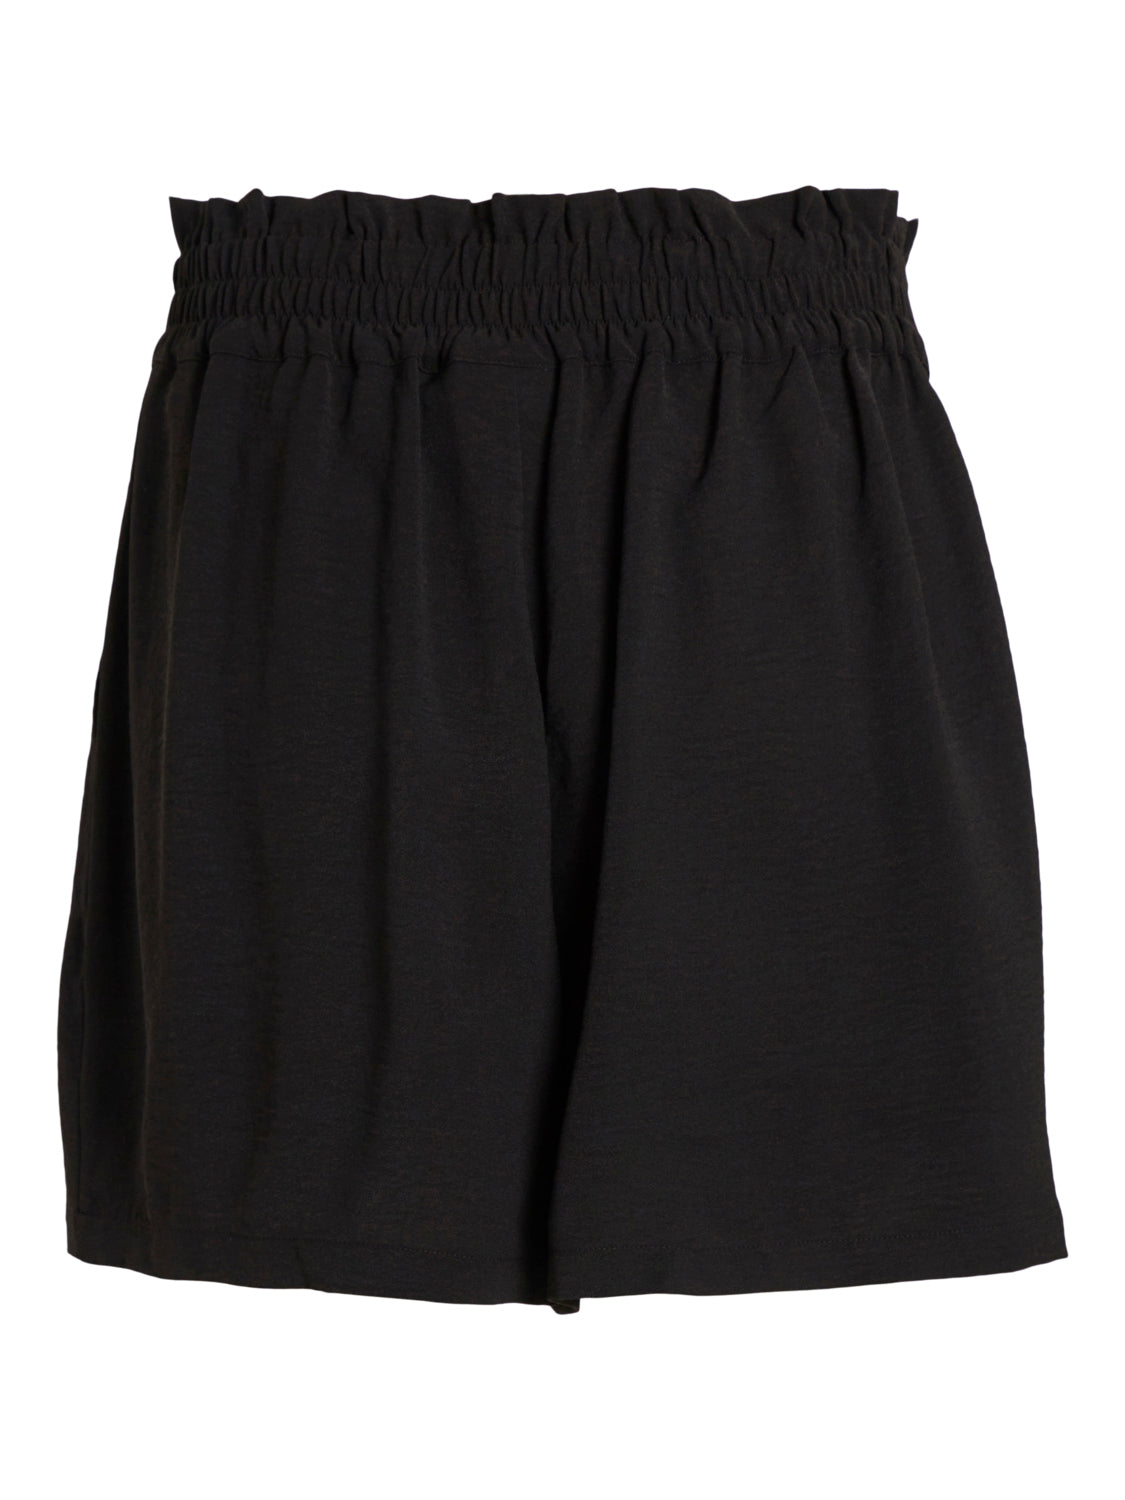 VIRASHA Shorts - Black